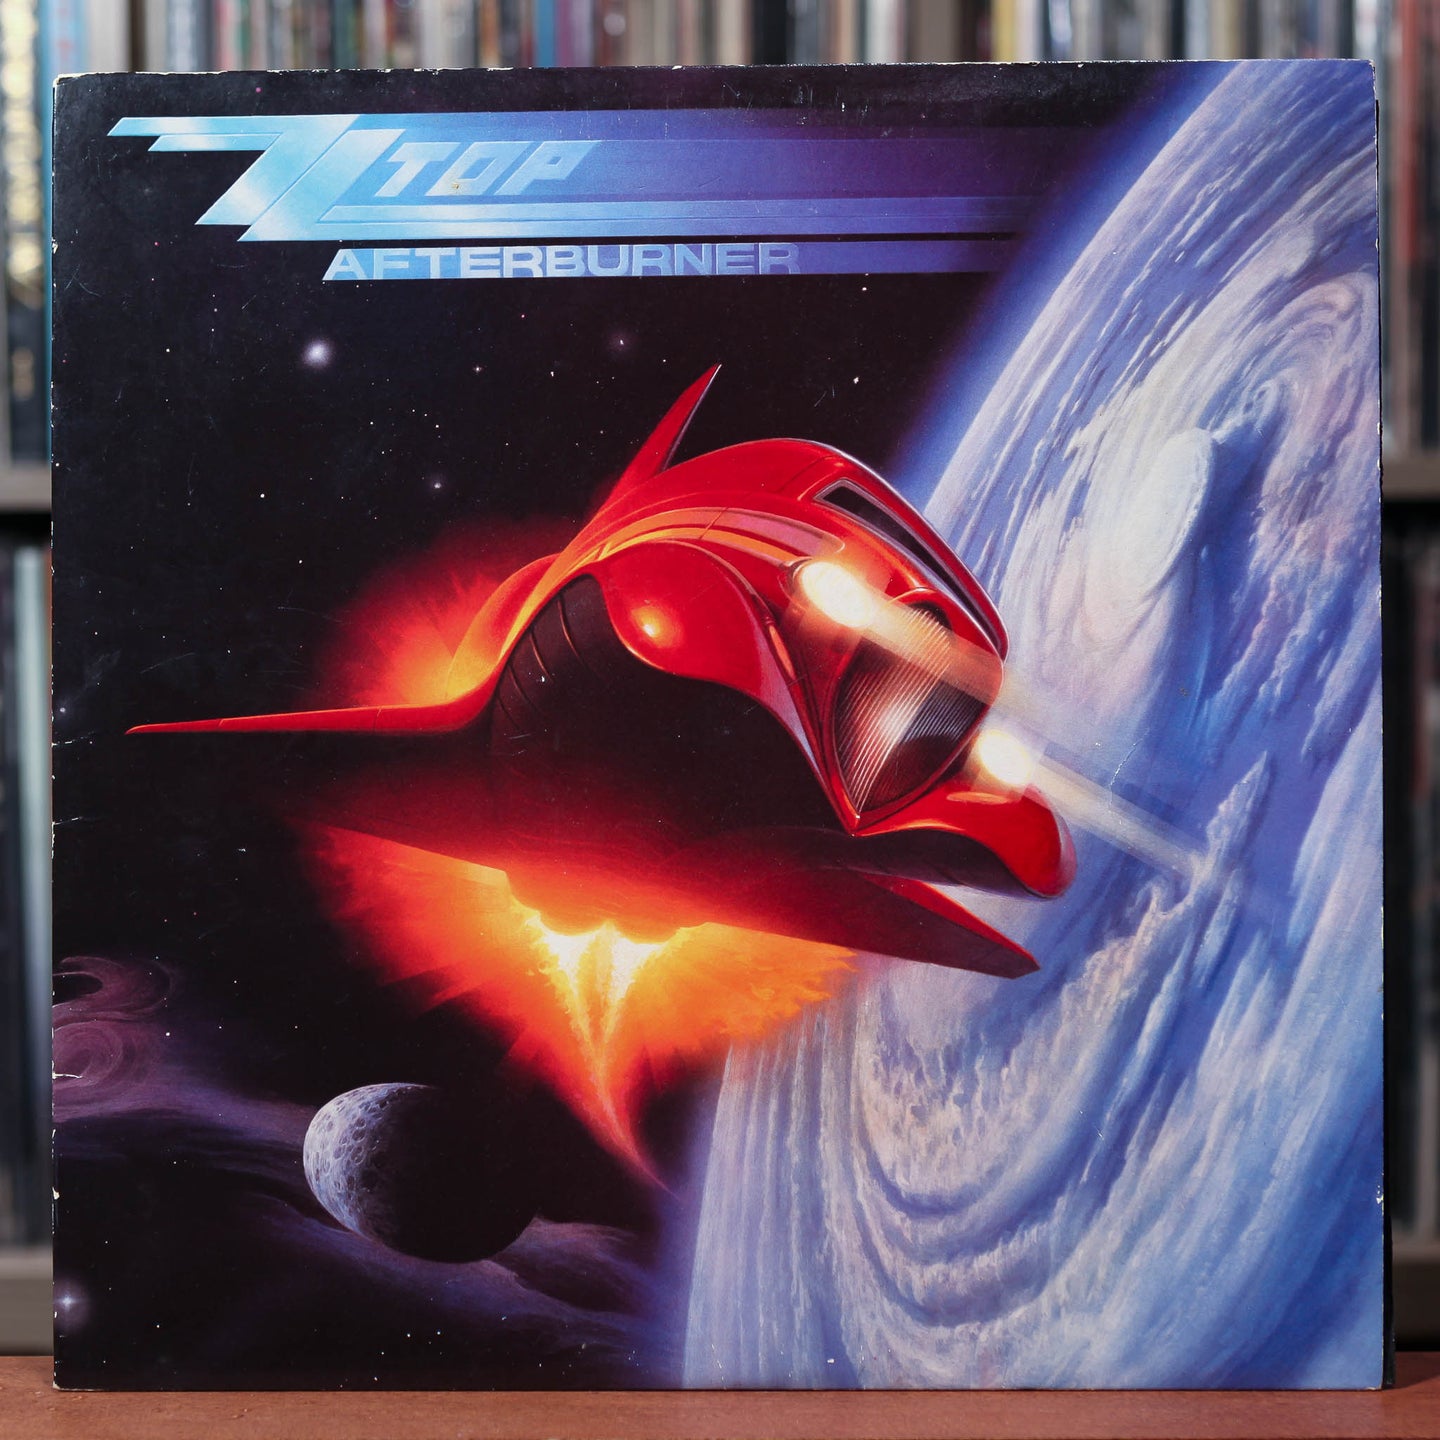 ZZ Top - Afterburner - 1985 Warner, VG+/VG+